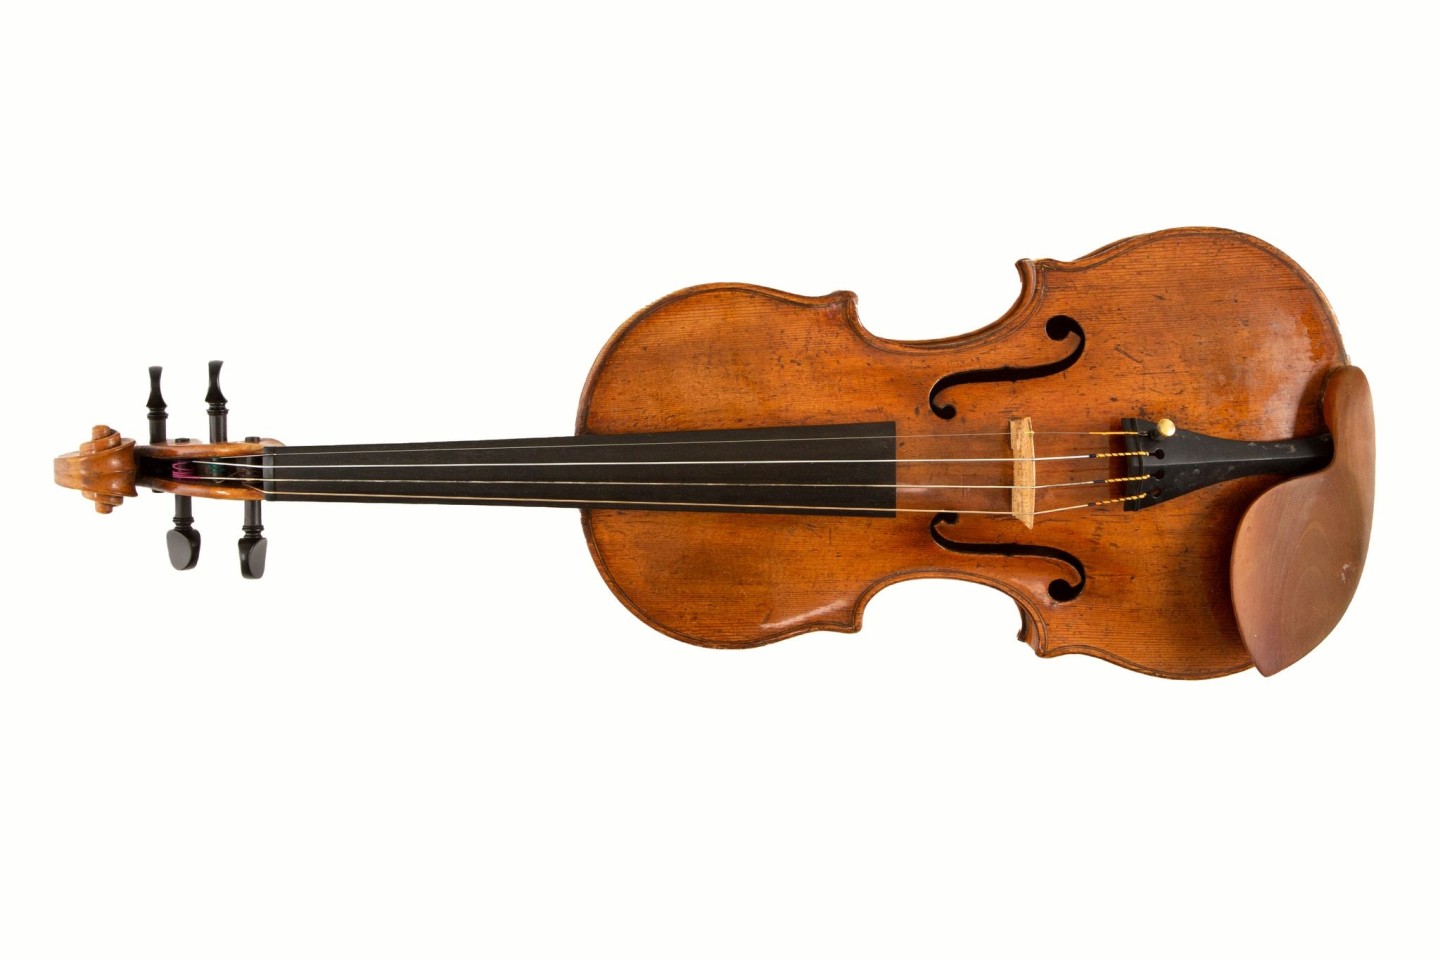 Die Geige aus dem 18. Jahrhundert, die bei Durchsuchungen sichergestellt wurde.